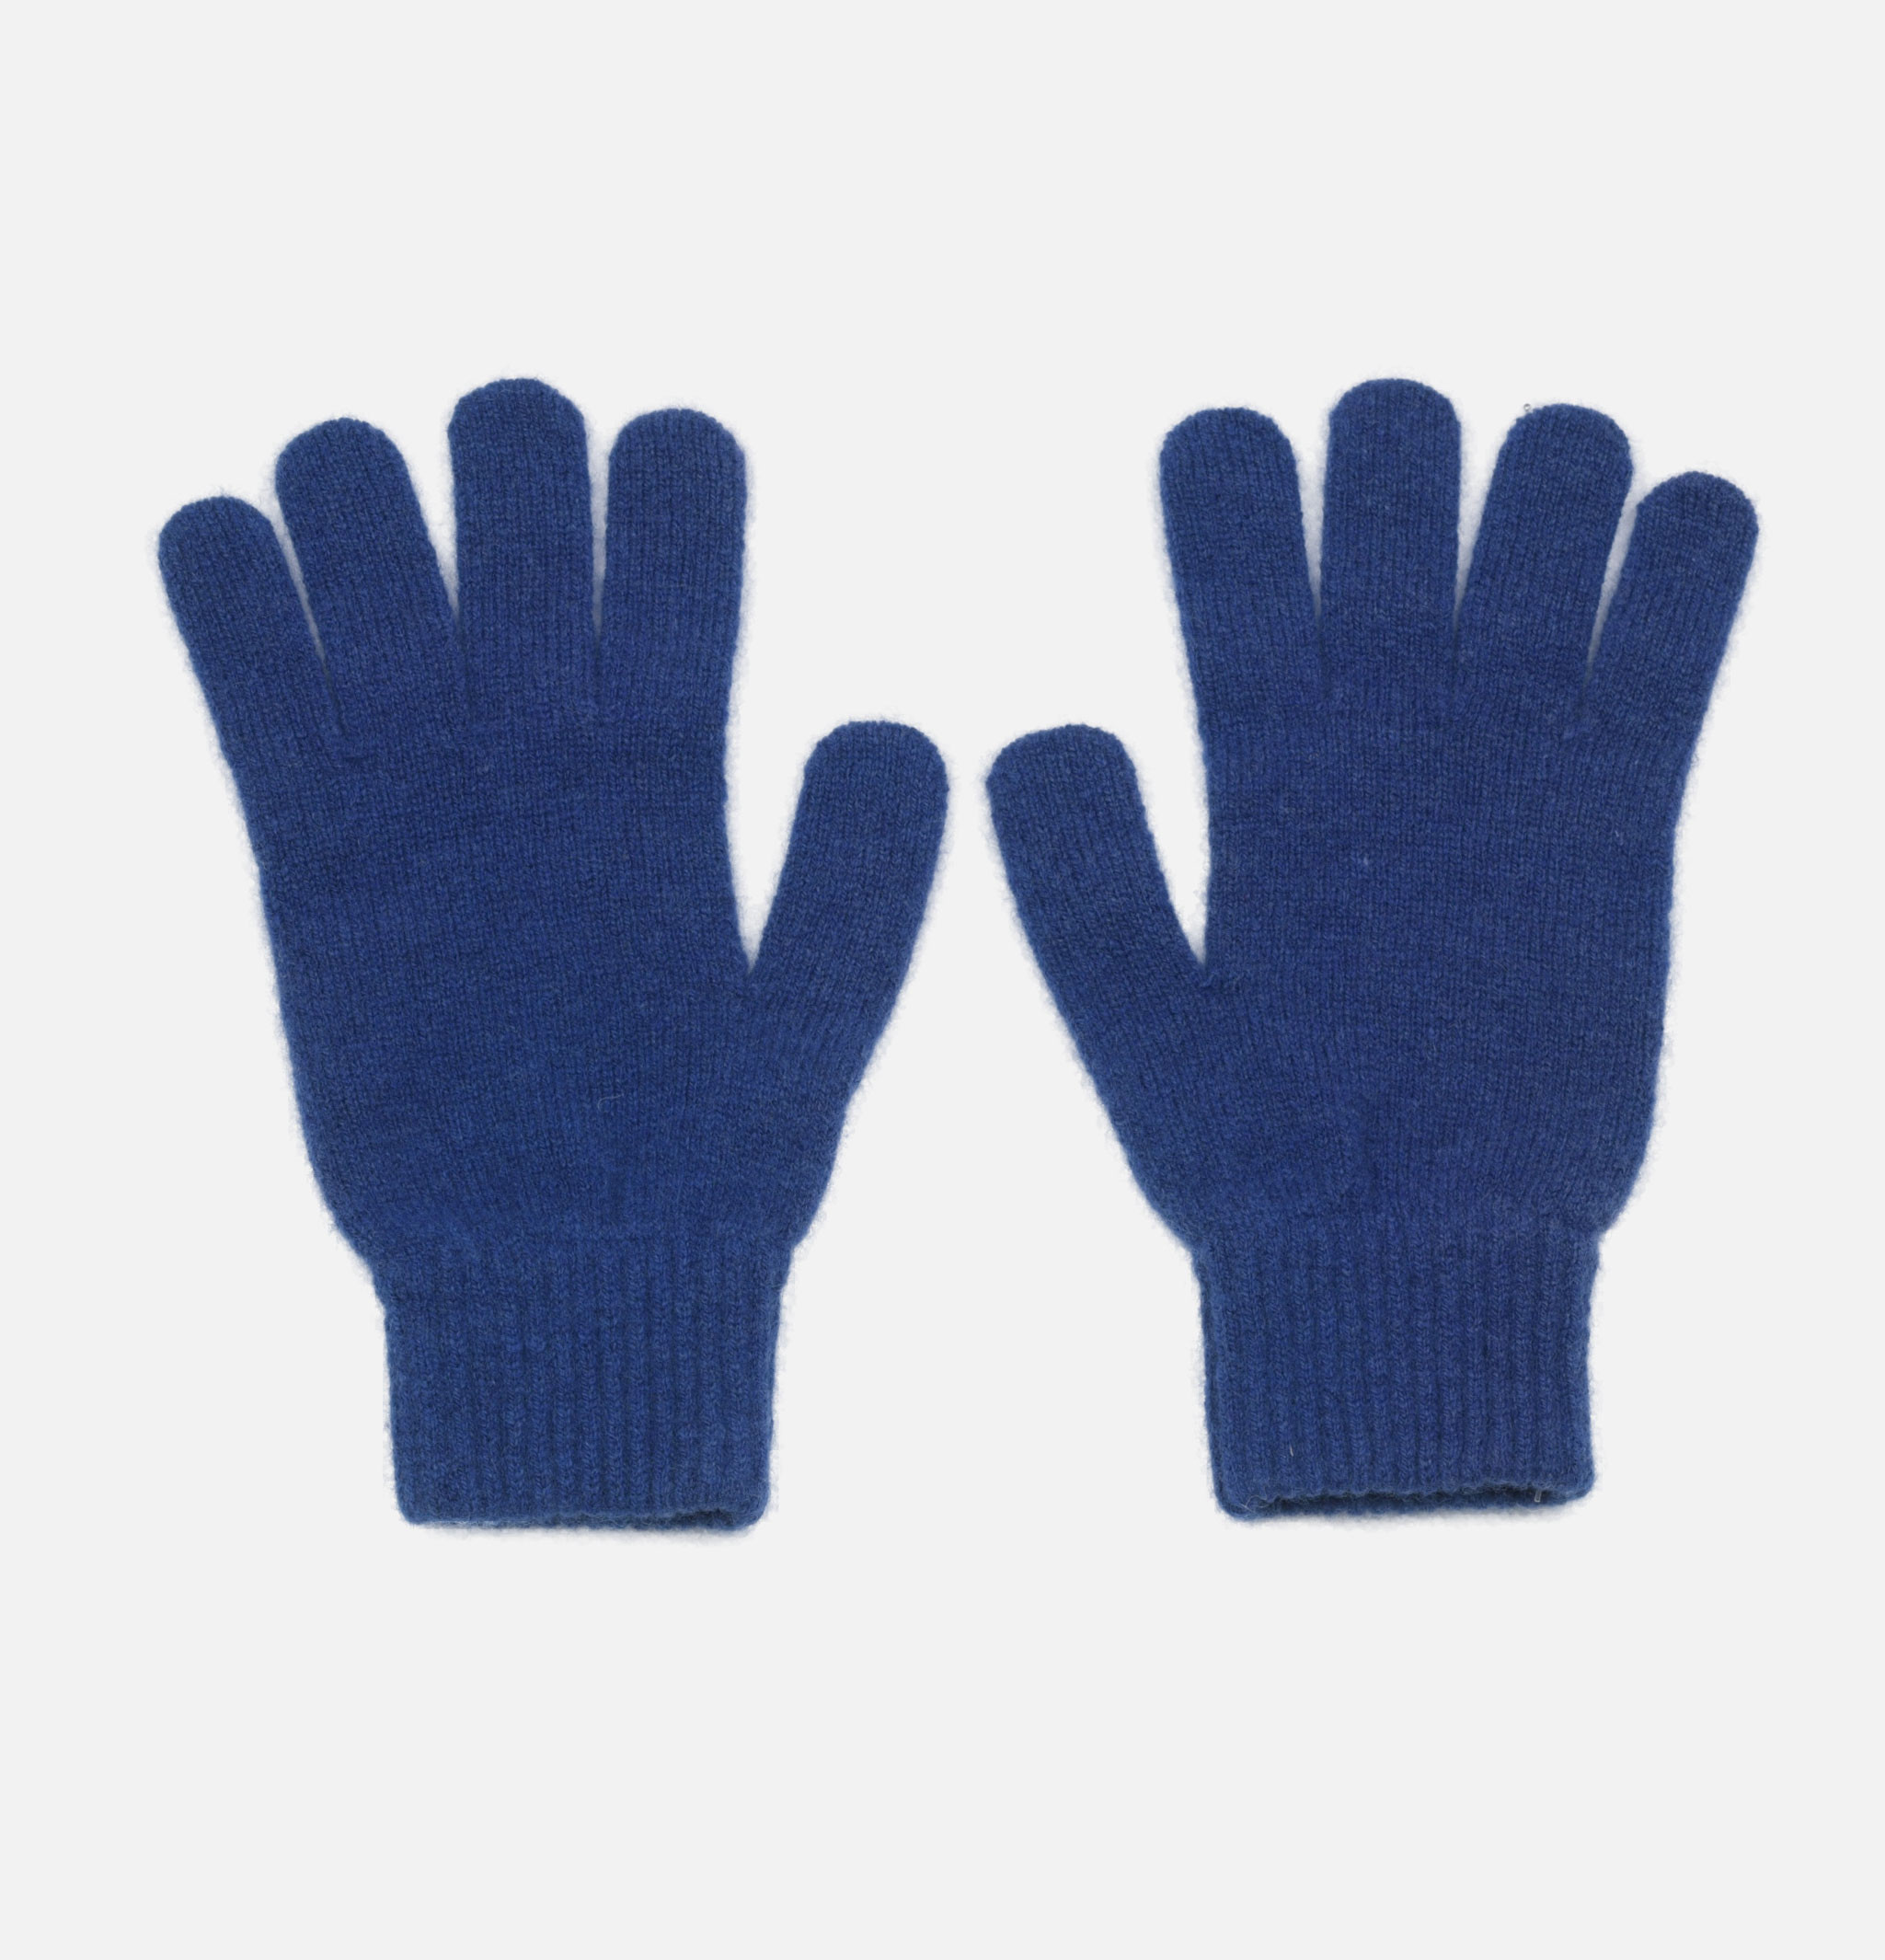 Munro Dearne gloves